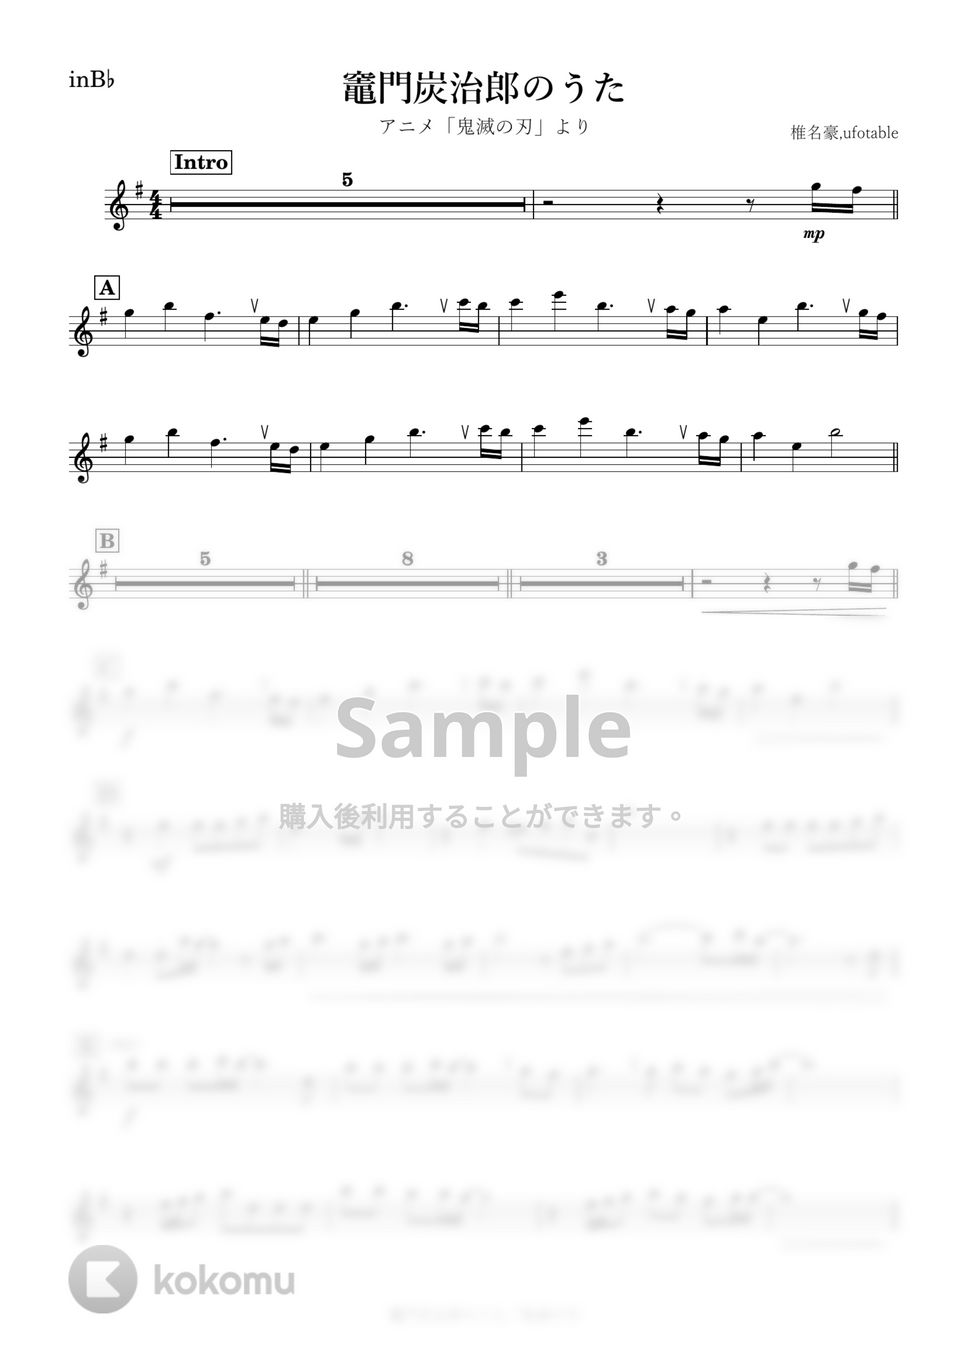 鬼滅の刃 - 竈門炭治郎のうた (B♭) by kanamusic